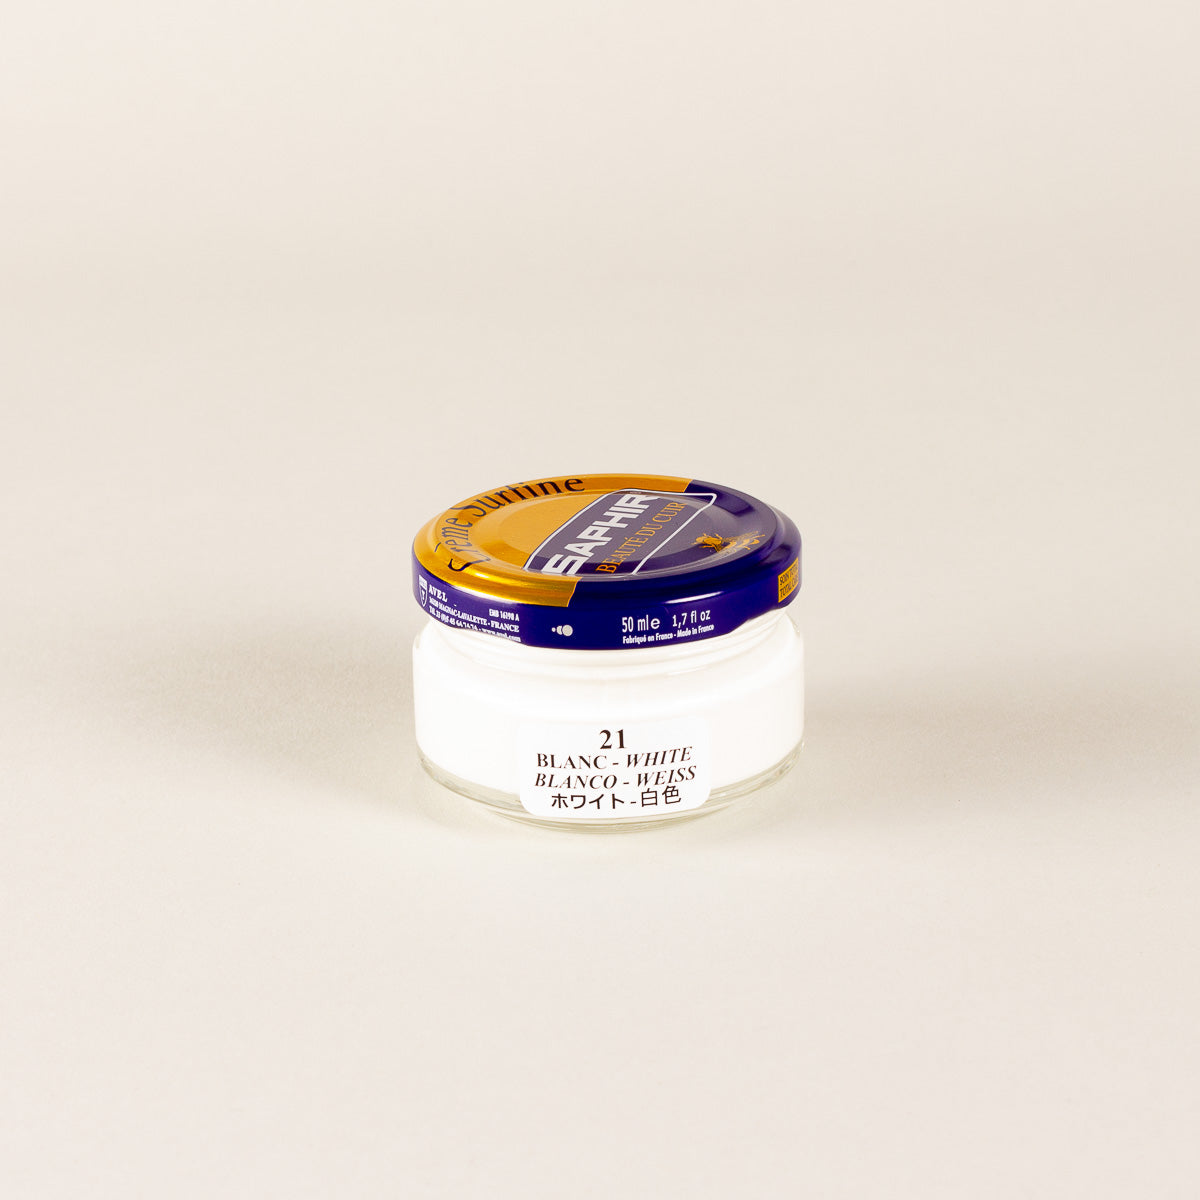 Saphir Beaute du Cuir Cream Surfine 50ML – Bourgee